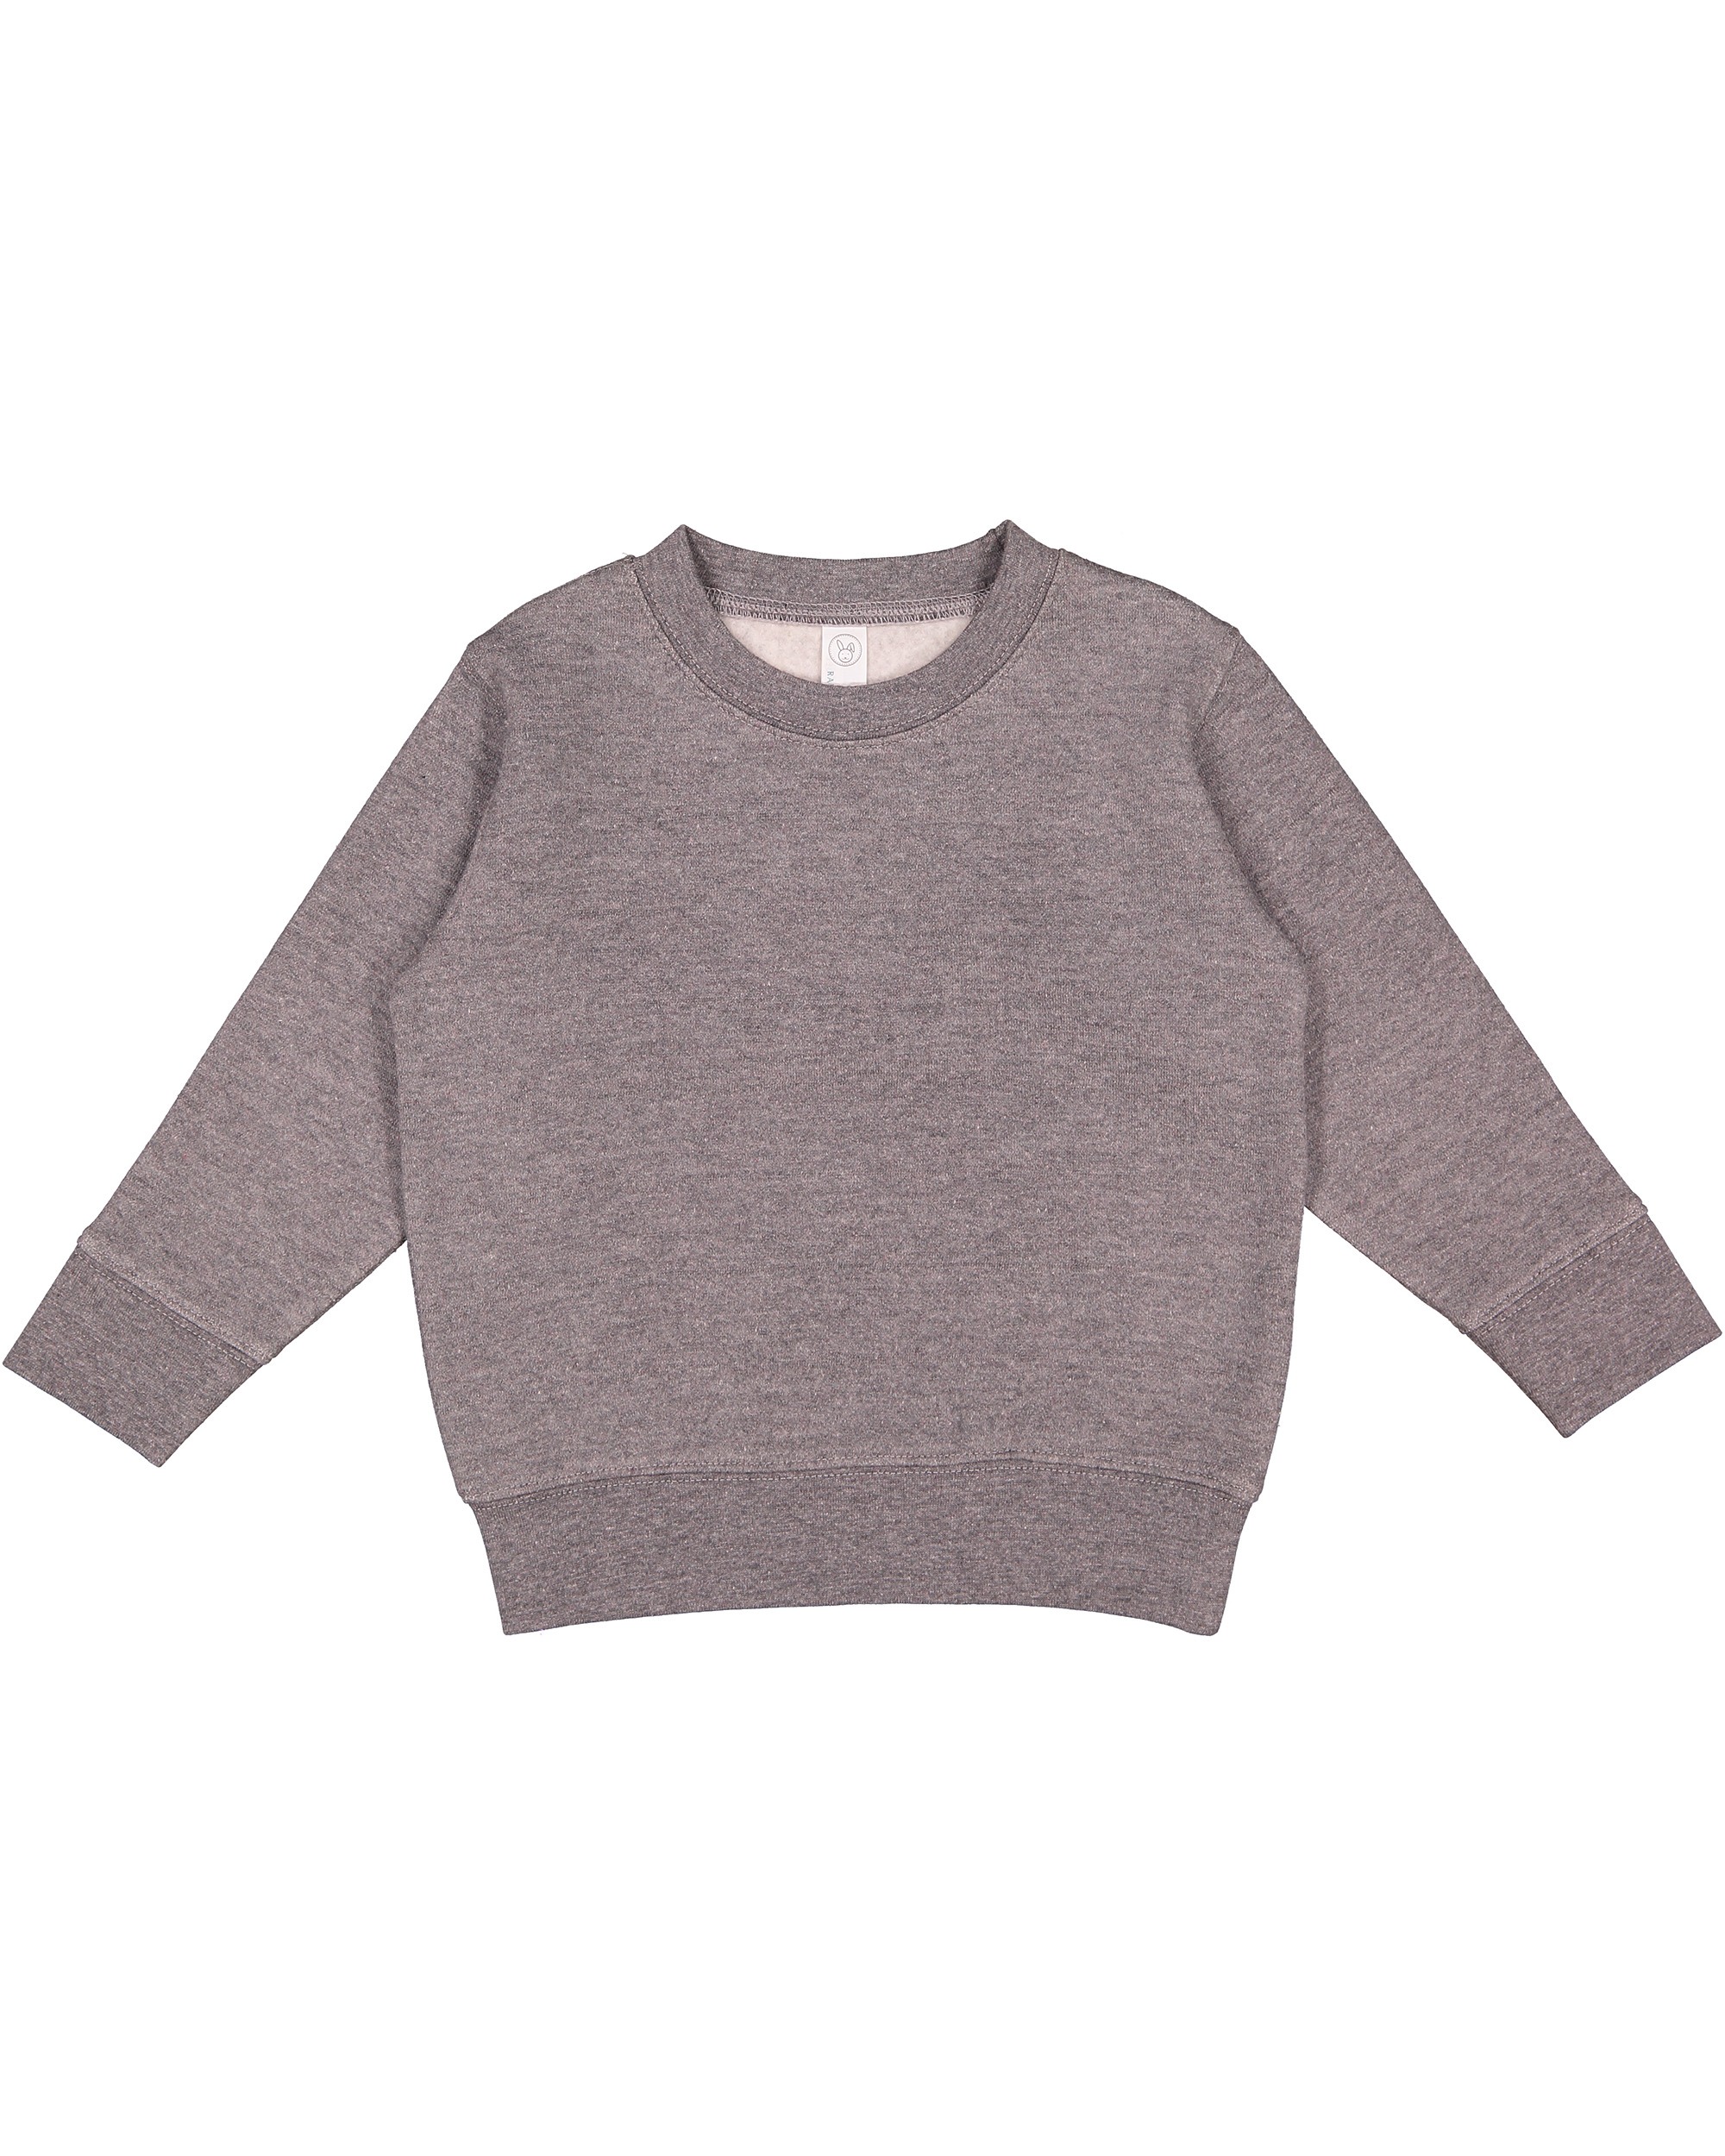 Rabbit Skins® 3317 Toddler Fleece Sweatshirt